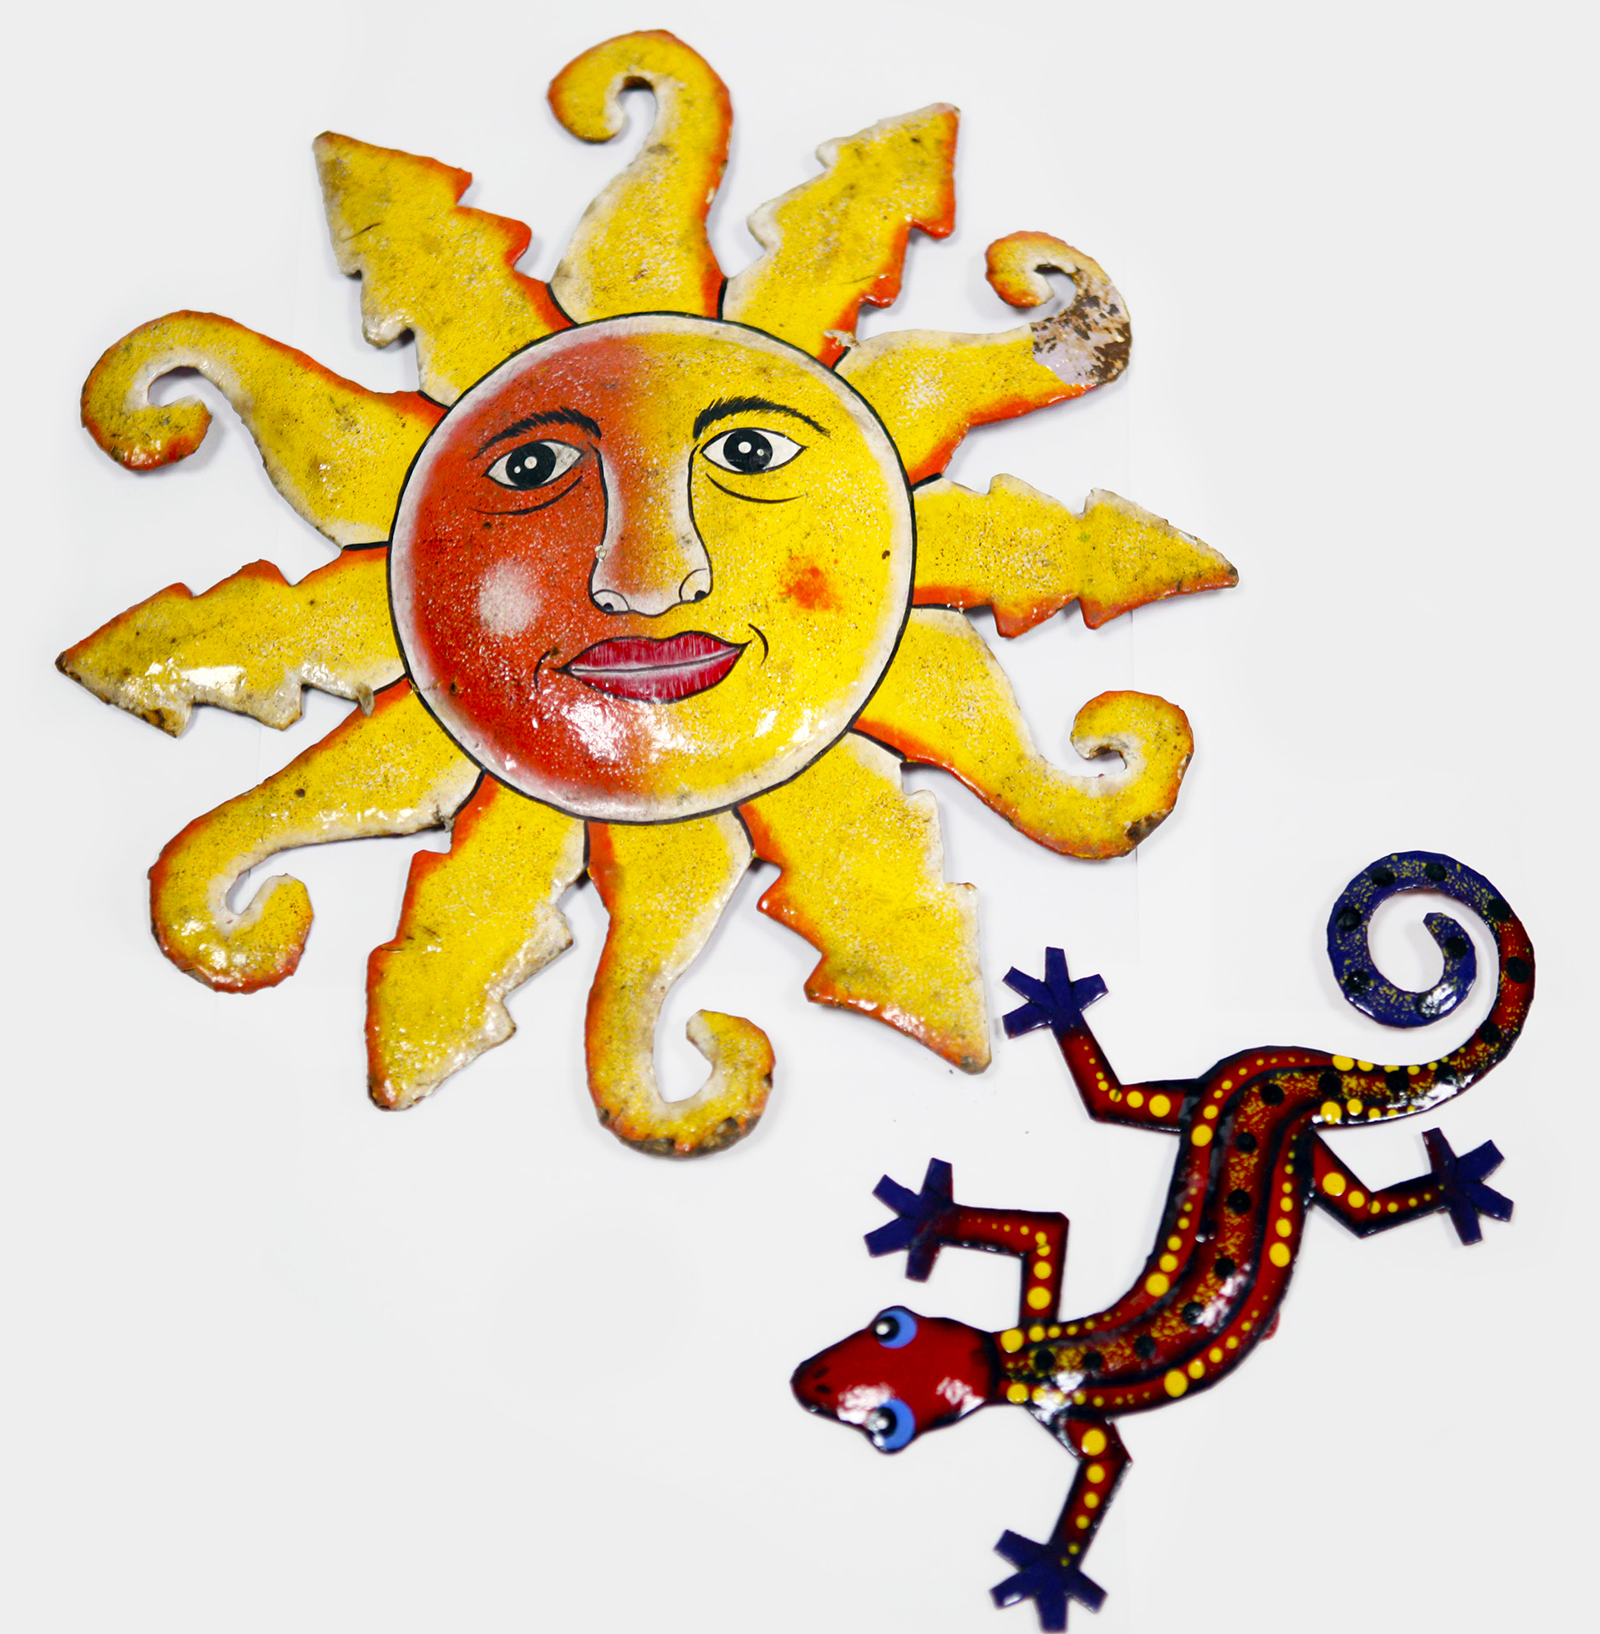 Zwei Dekoartikel aus Haiti: eine Sonne und eine Echse aus Blech. (Quelle: Gunhild Aiyub)